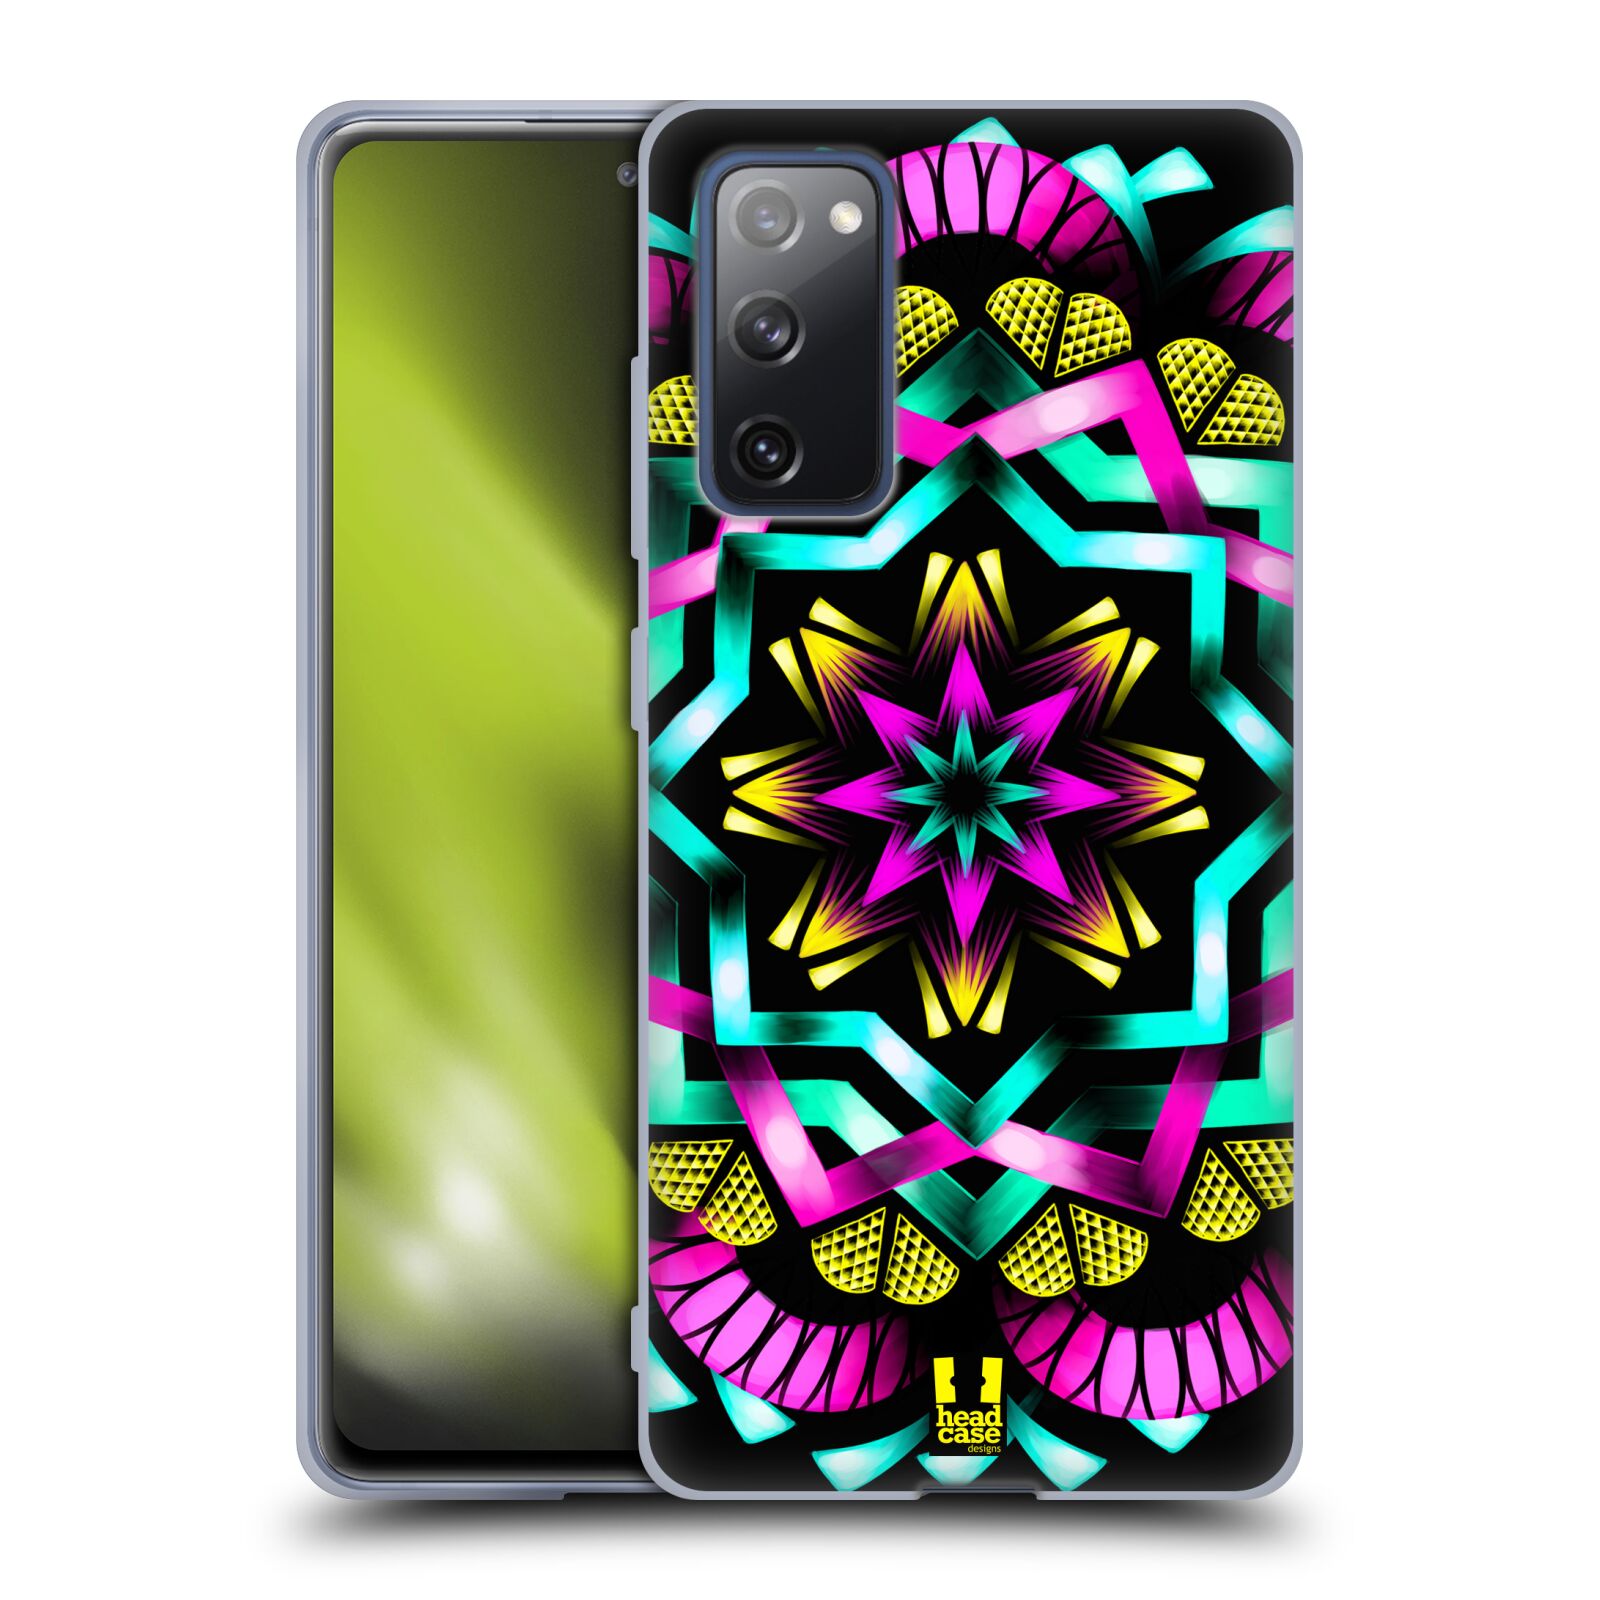 Plastový obal HEAD CASE na mobil Samsung Galaxy S20 FE / S20 FE 5G vzor Indie Mandala kaleidoskop barevný vzor SLUNCE